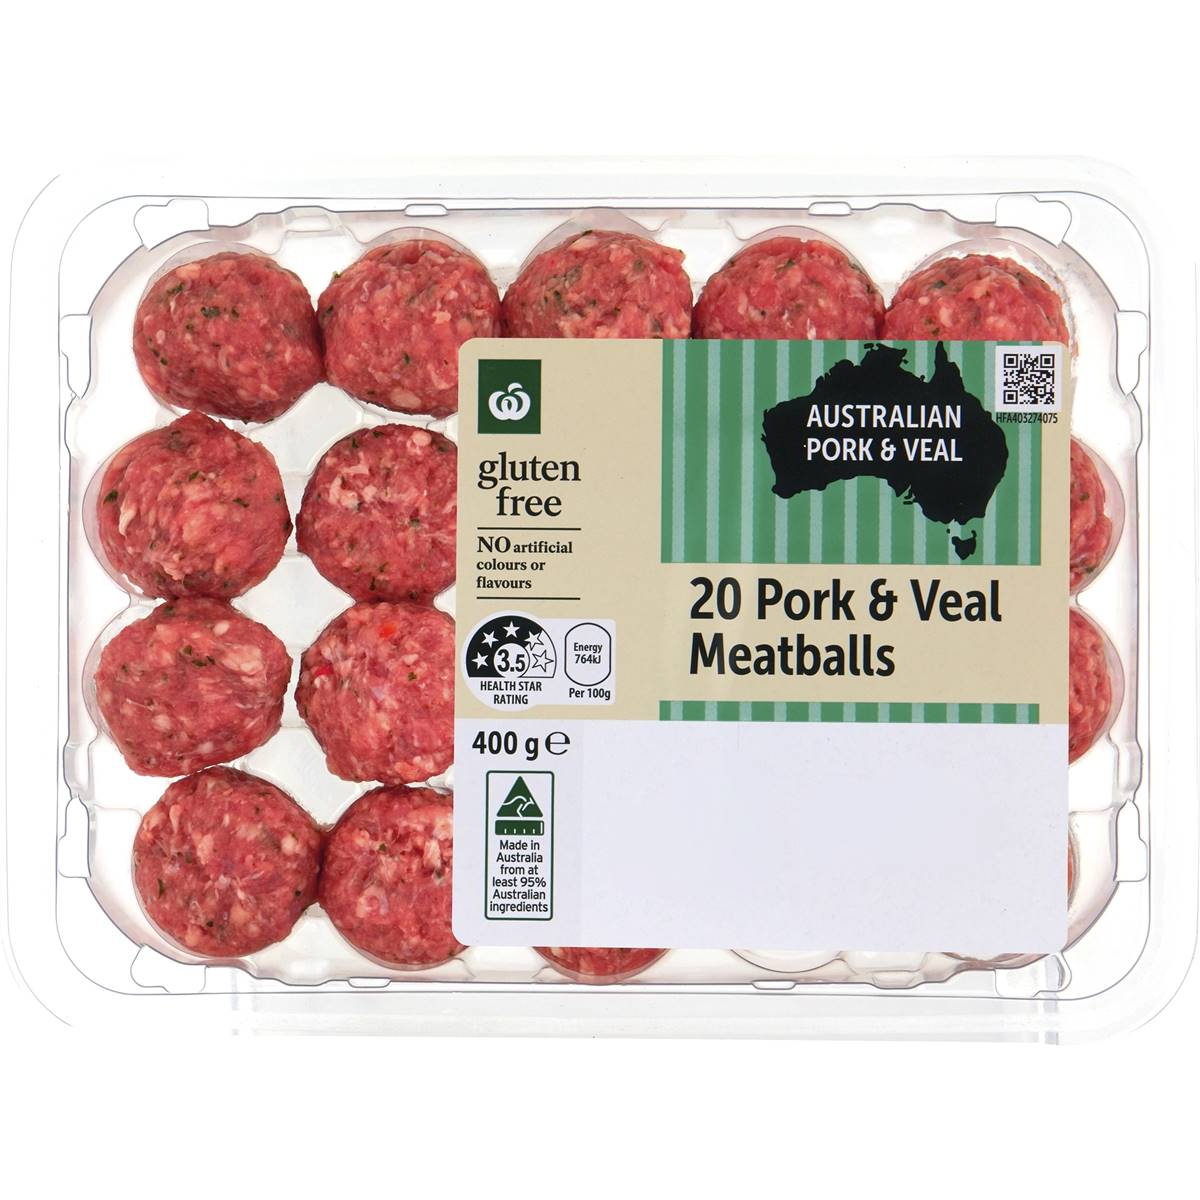 Calories in Woolworths Pork & Veal Meatballs